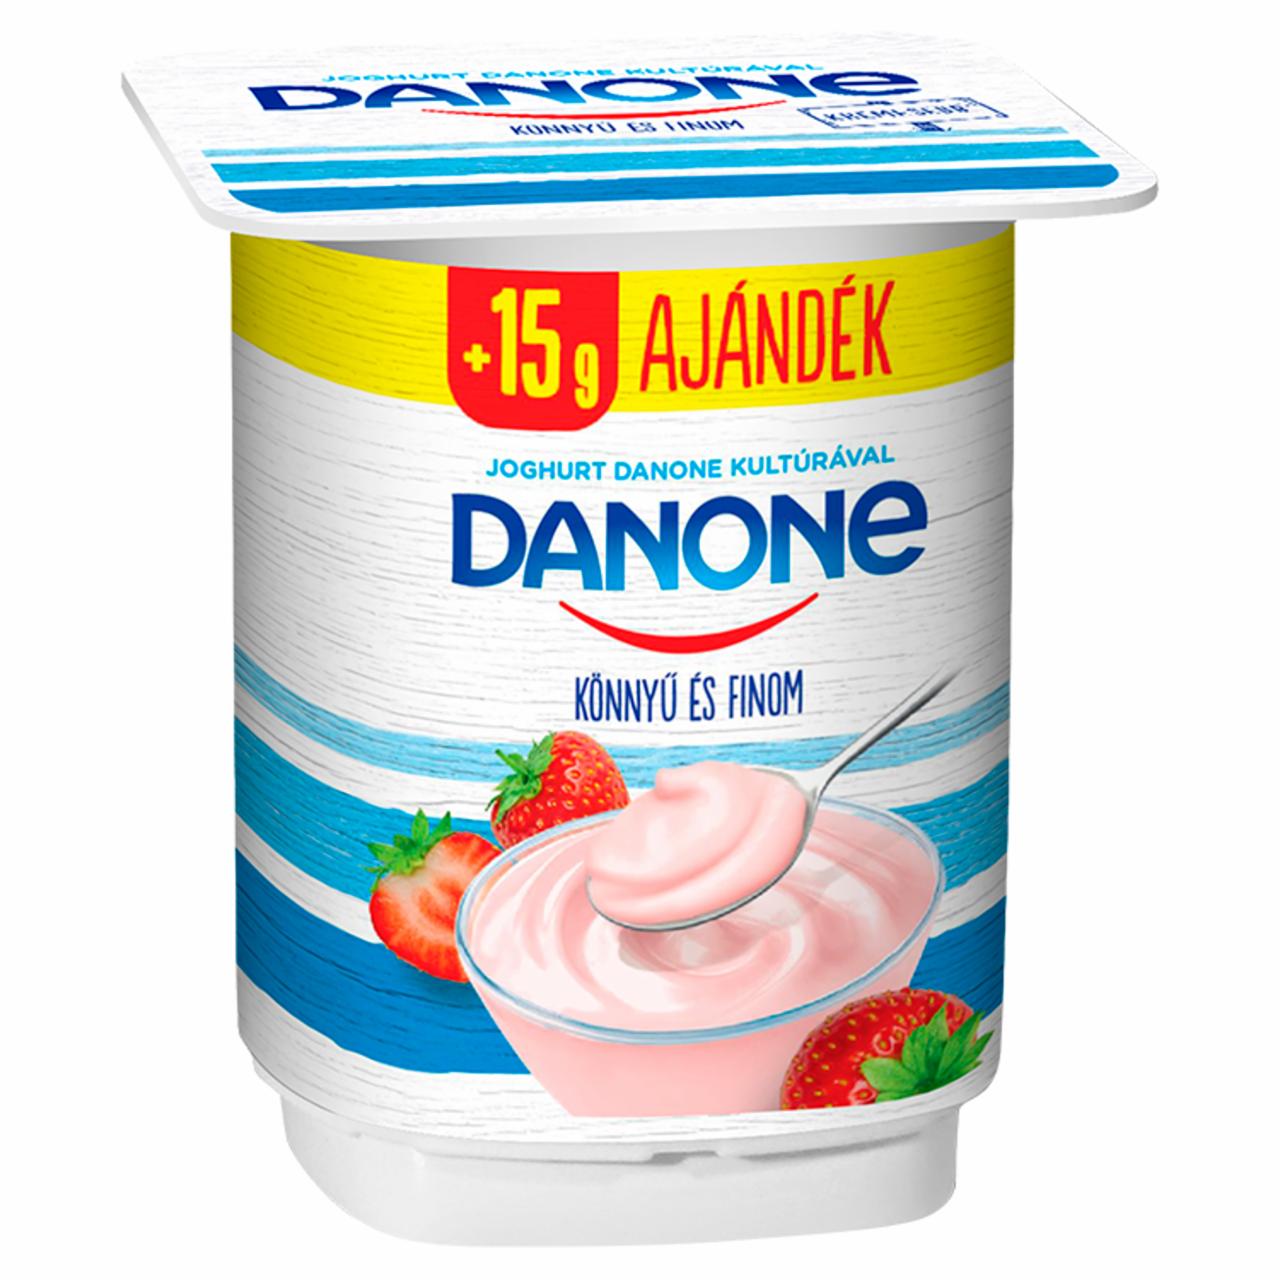 Képek - Danone eperízű, élőflórás, zsírszegény joghurt 140 g